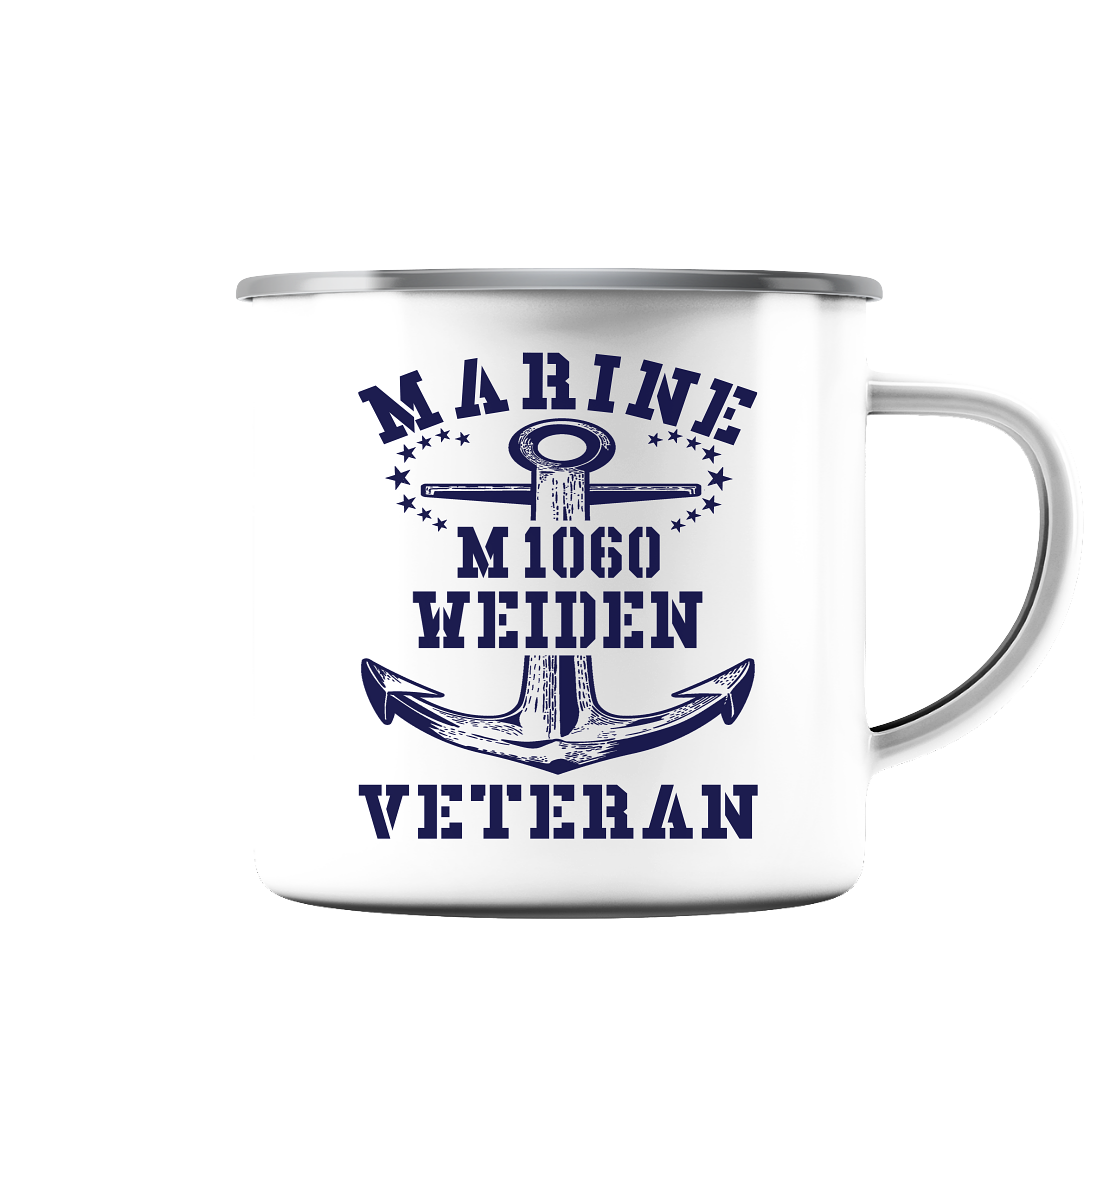 Mij.-Boot M1060 WEIDEN Marine Veteran - Emaille Tasse (Silber)